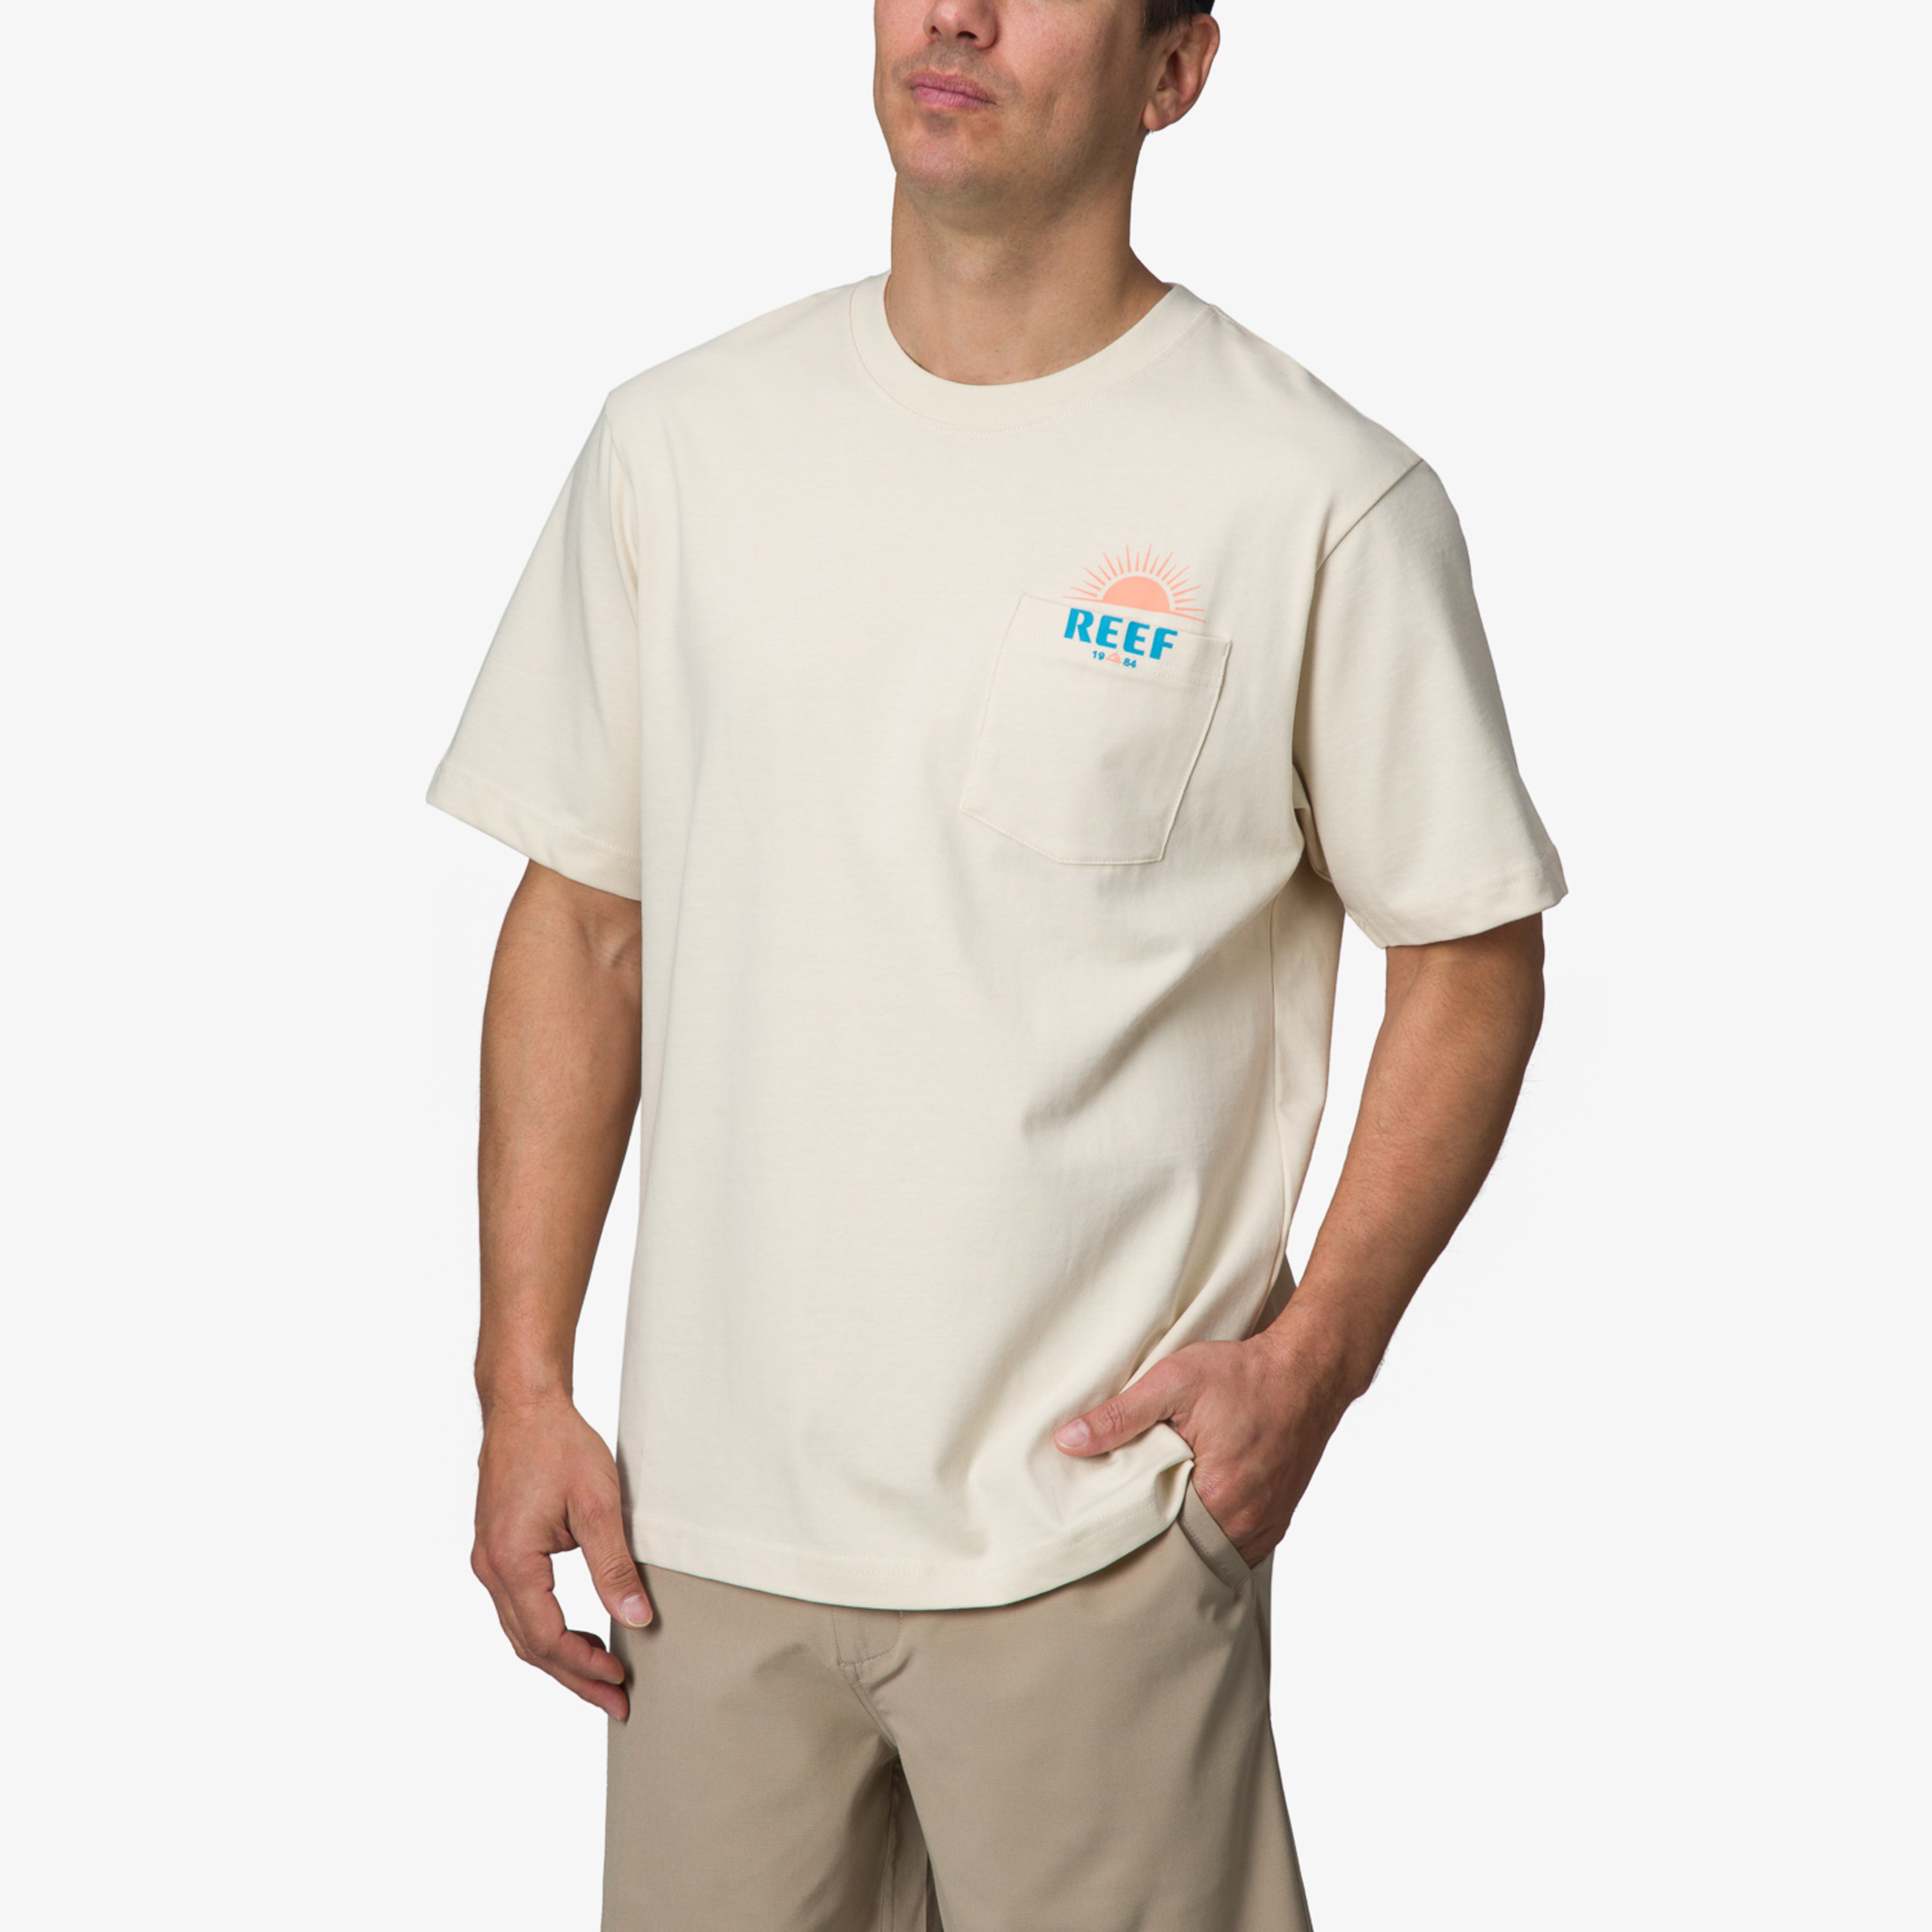 Sunrise Pocket Short Sleeve T-Shirt